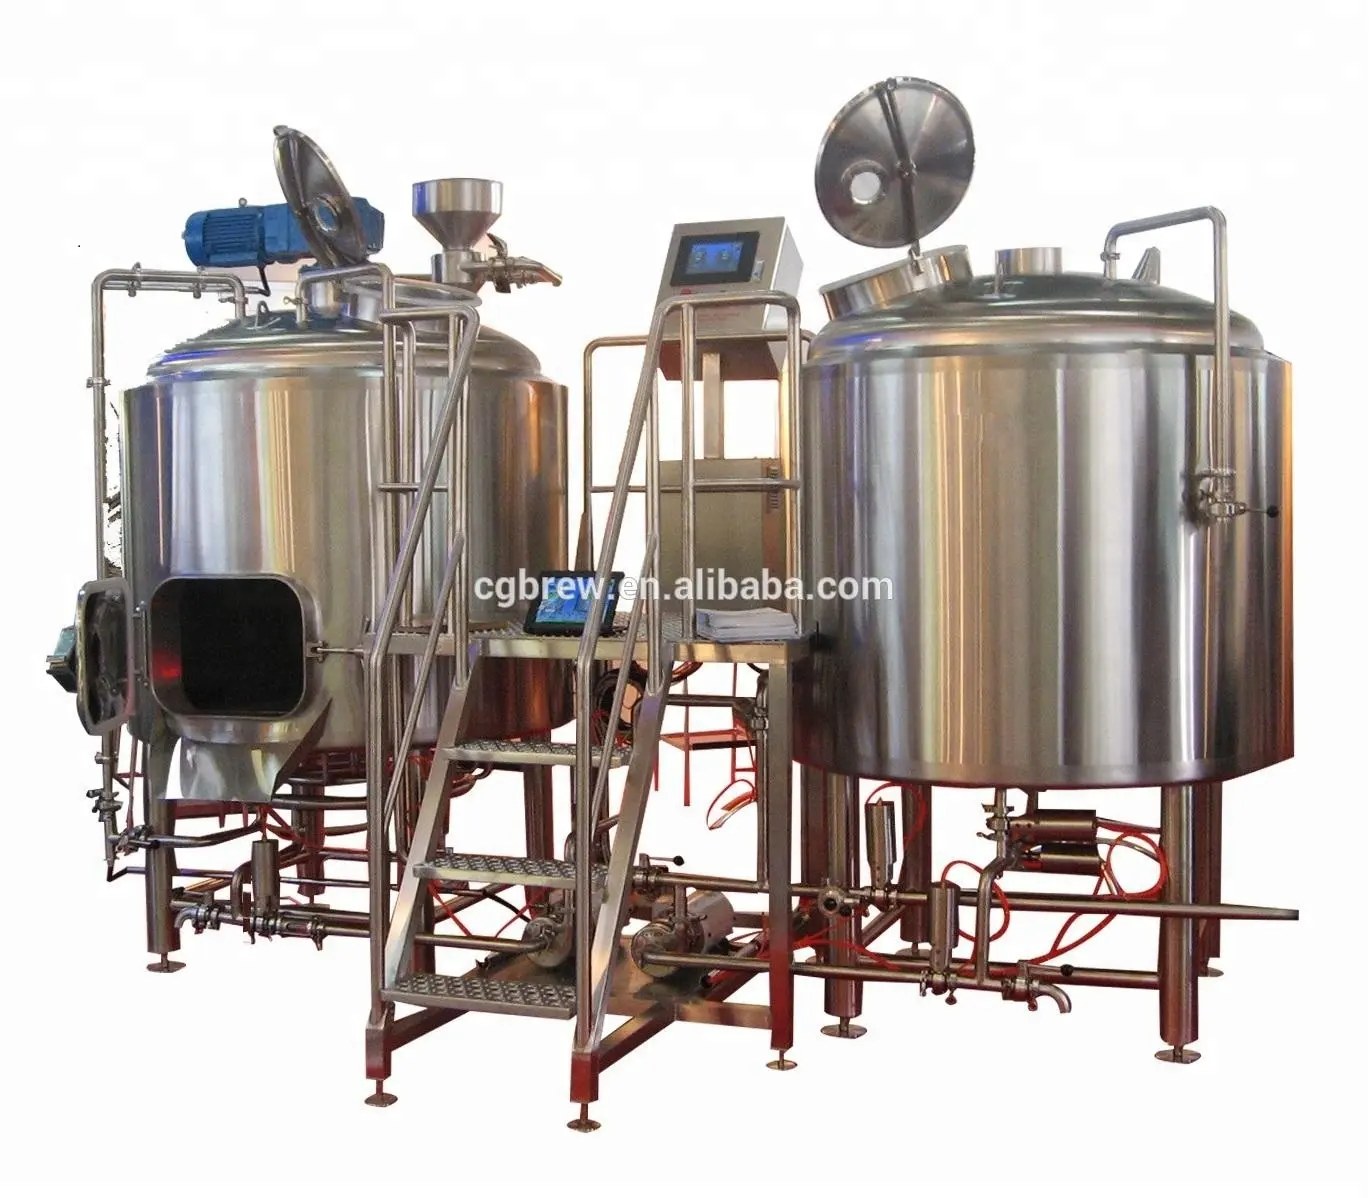 300L arpa malt bira makinesi ile profesyonel mikro bira sistemleri